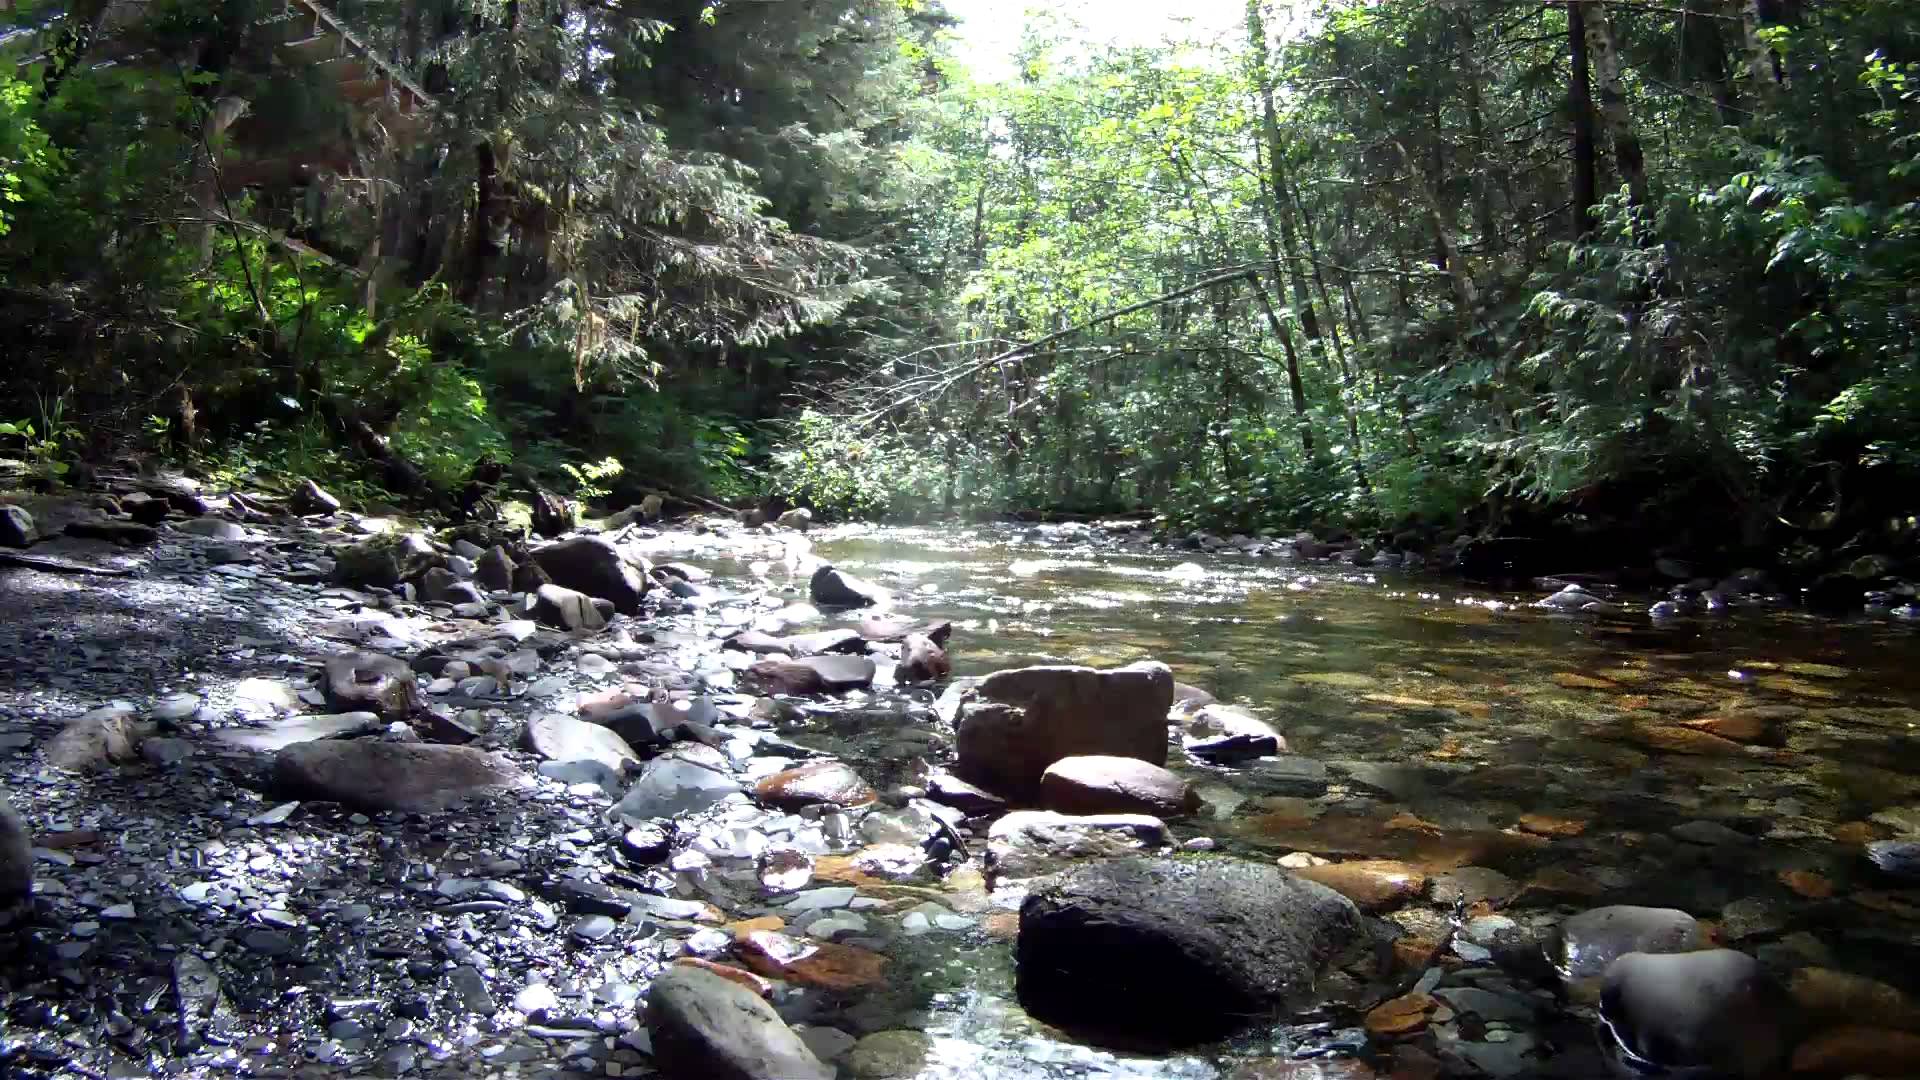 Ten Relaxing Minutes By The Beautiful Creek - YouTube